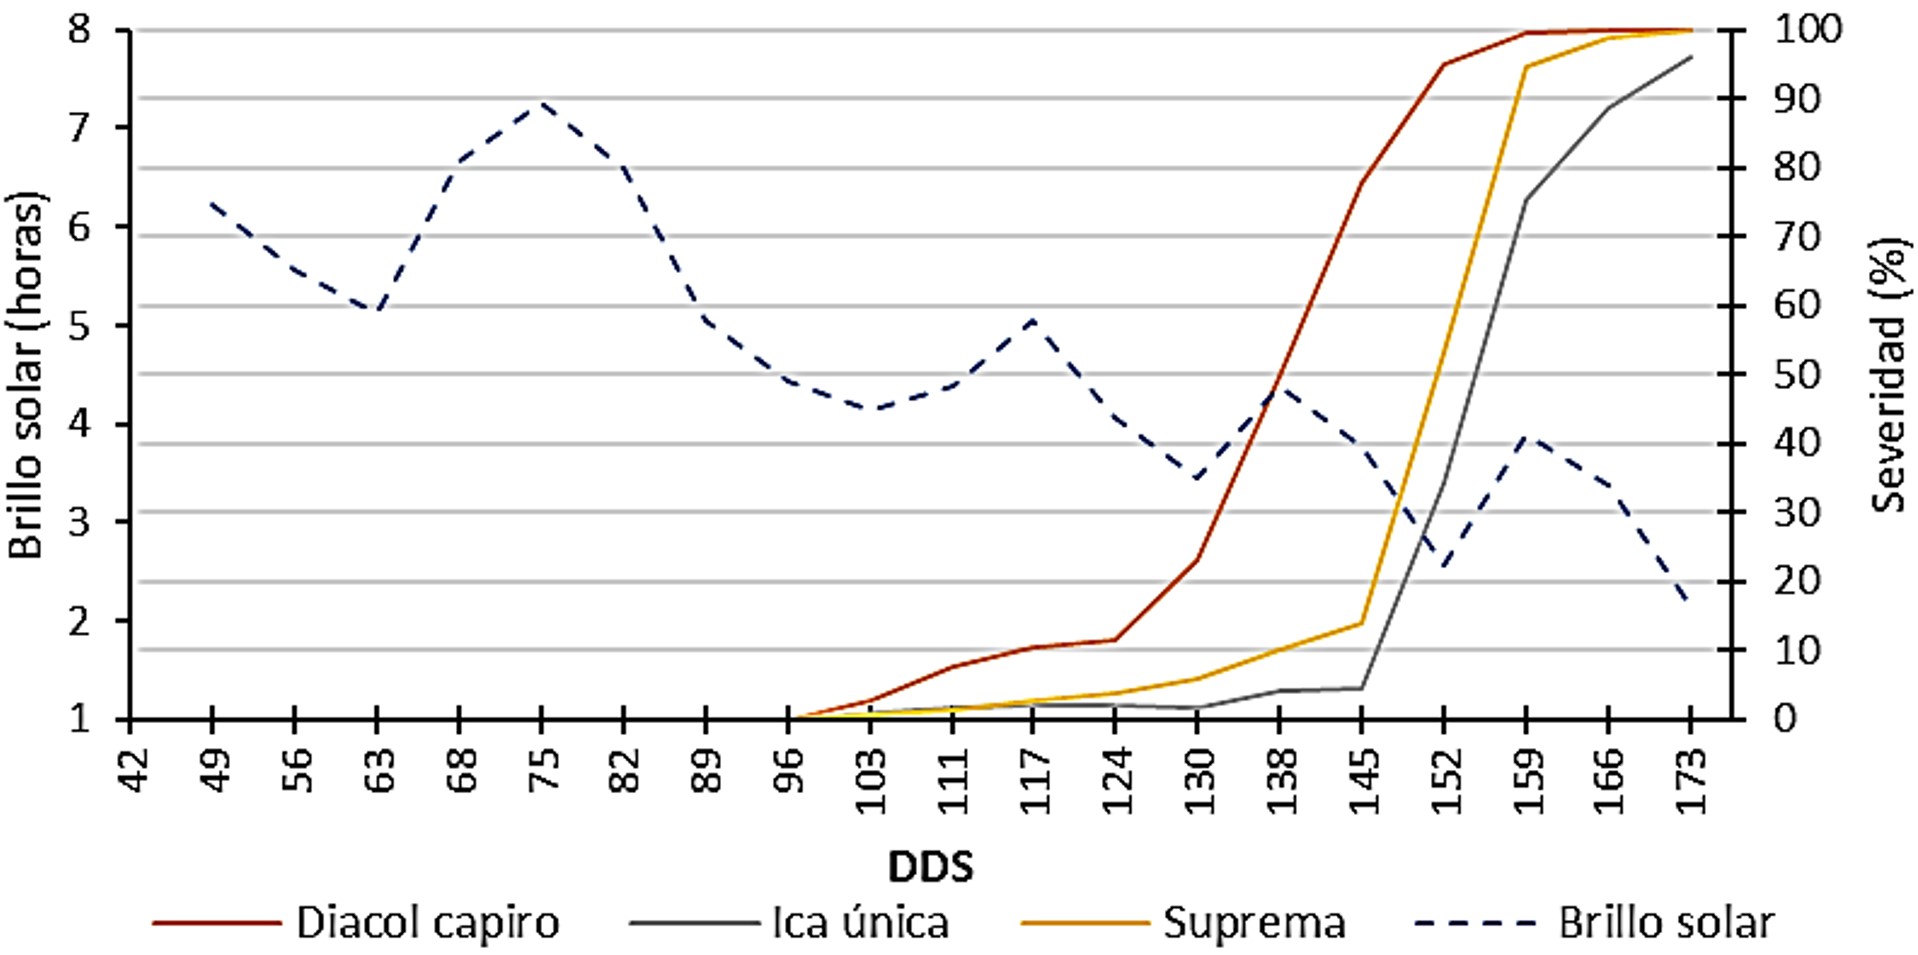 Relación de la severidad del tizón tardío (P. infestans) y la precipitación en tres variedades de papa durante los meses de diciembre 2015 a mayo 2016 en un ciclo de cultivo (173 días después de siembra - dds).